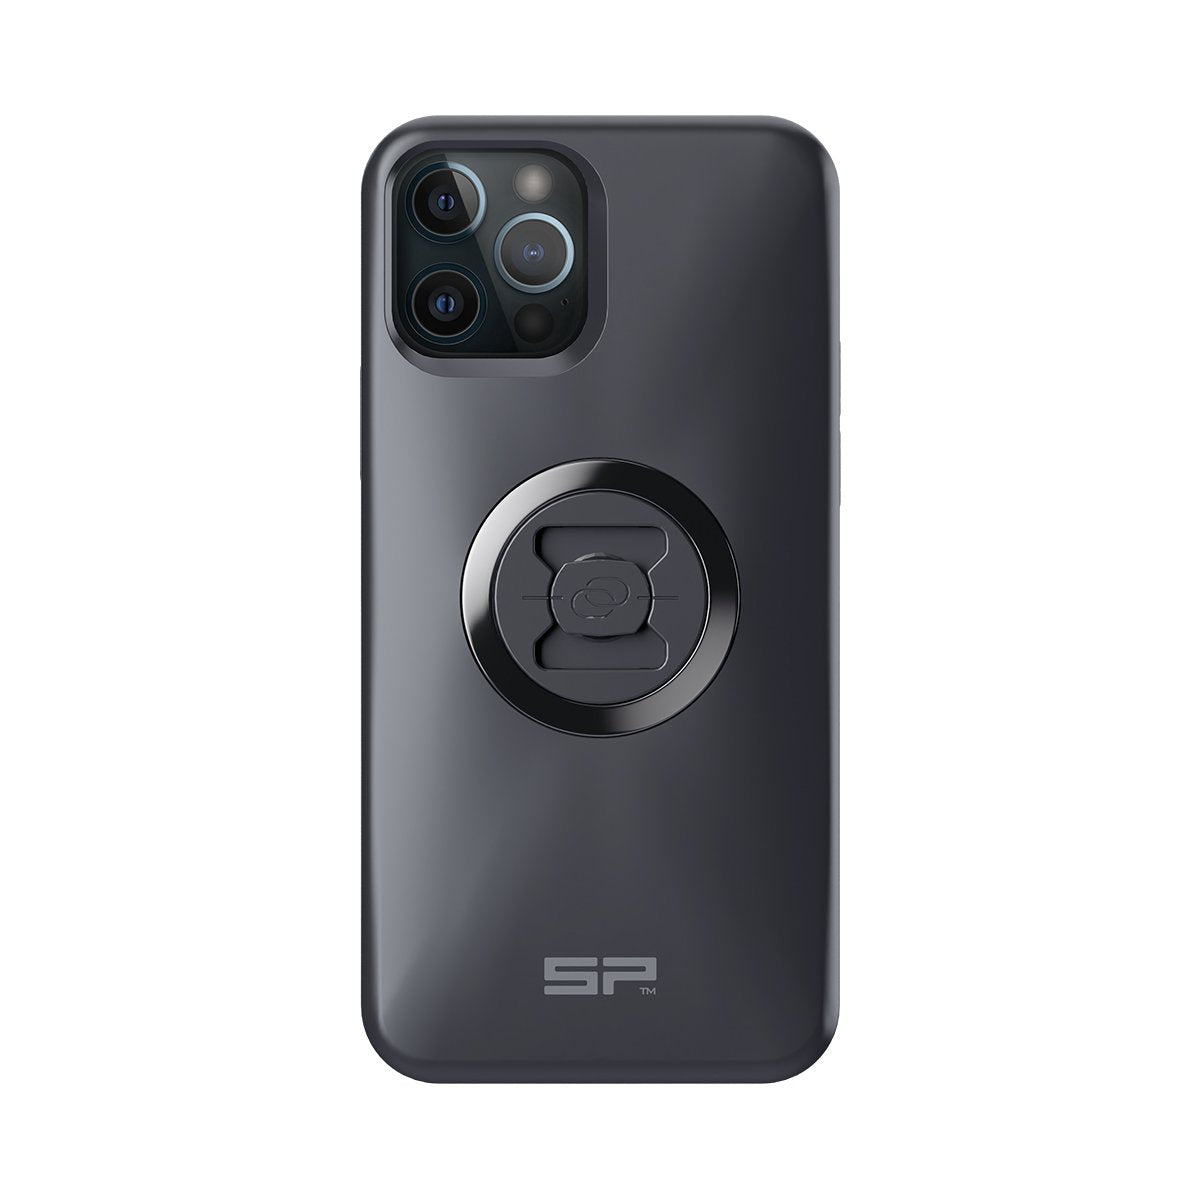 SPC phone case for iPhones